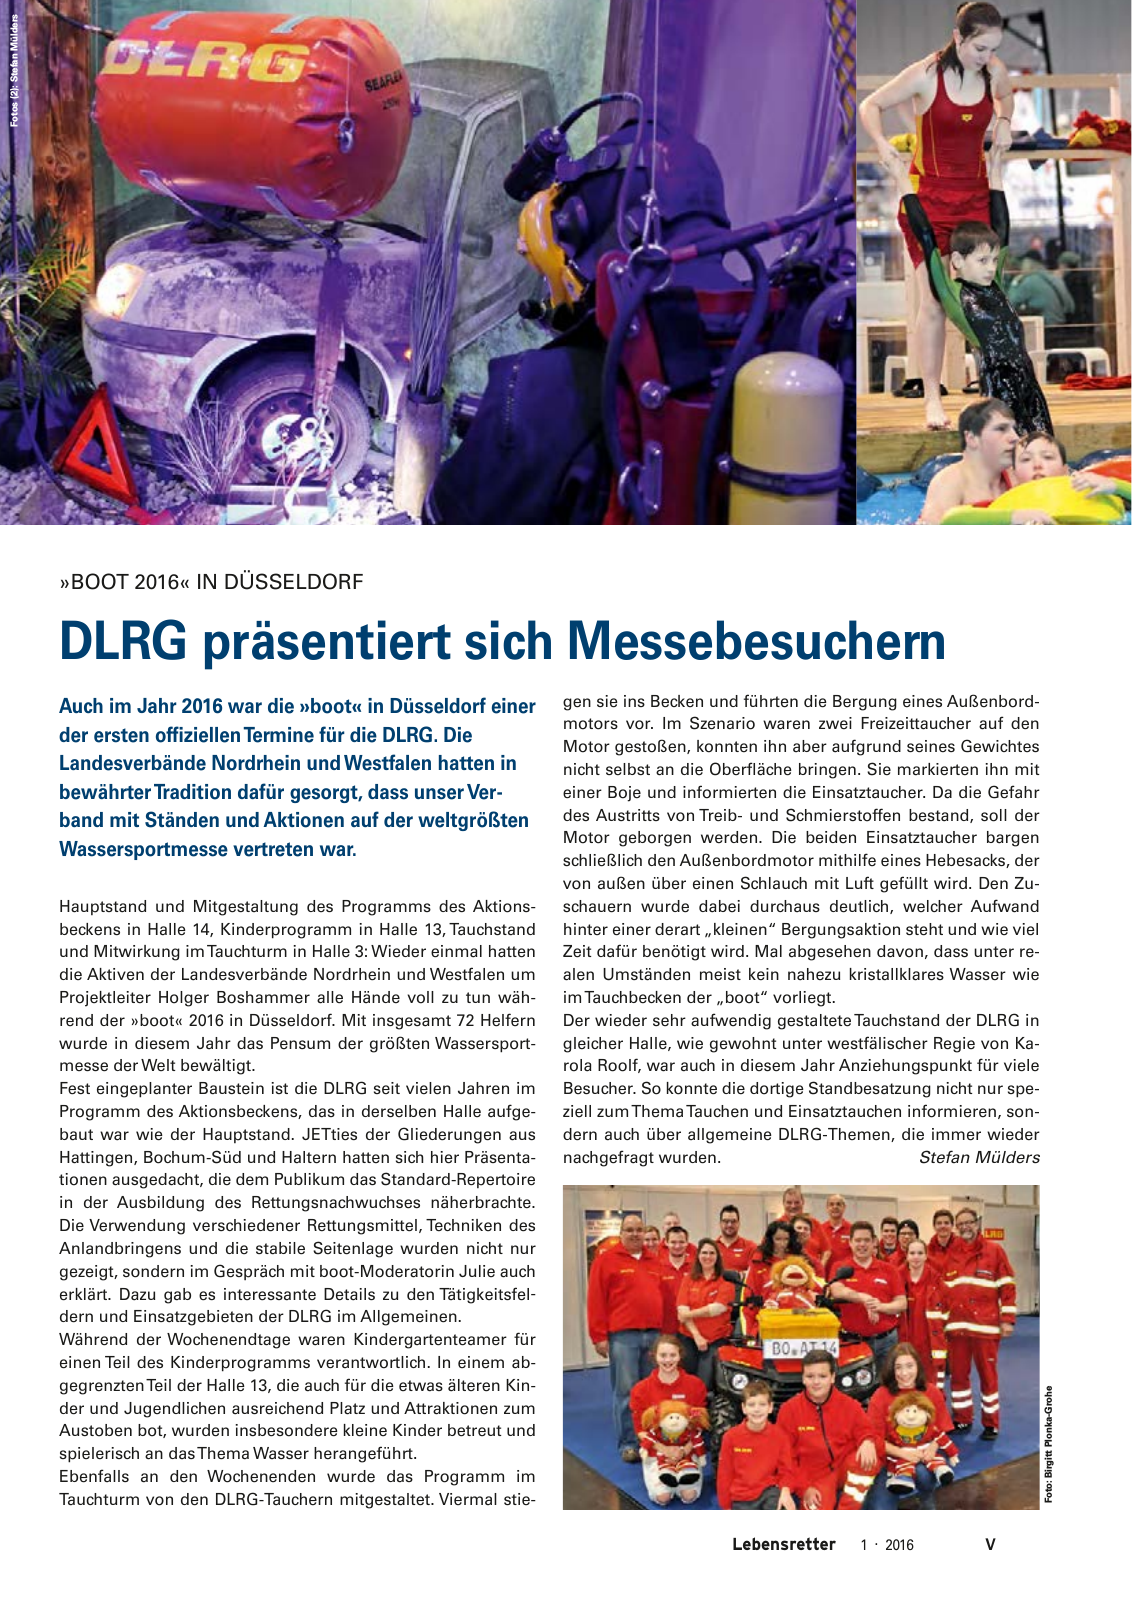 Vorschau Lebensretter 1/2016 - Regionalausgabe Westfalen Seite 7